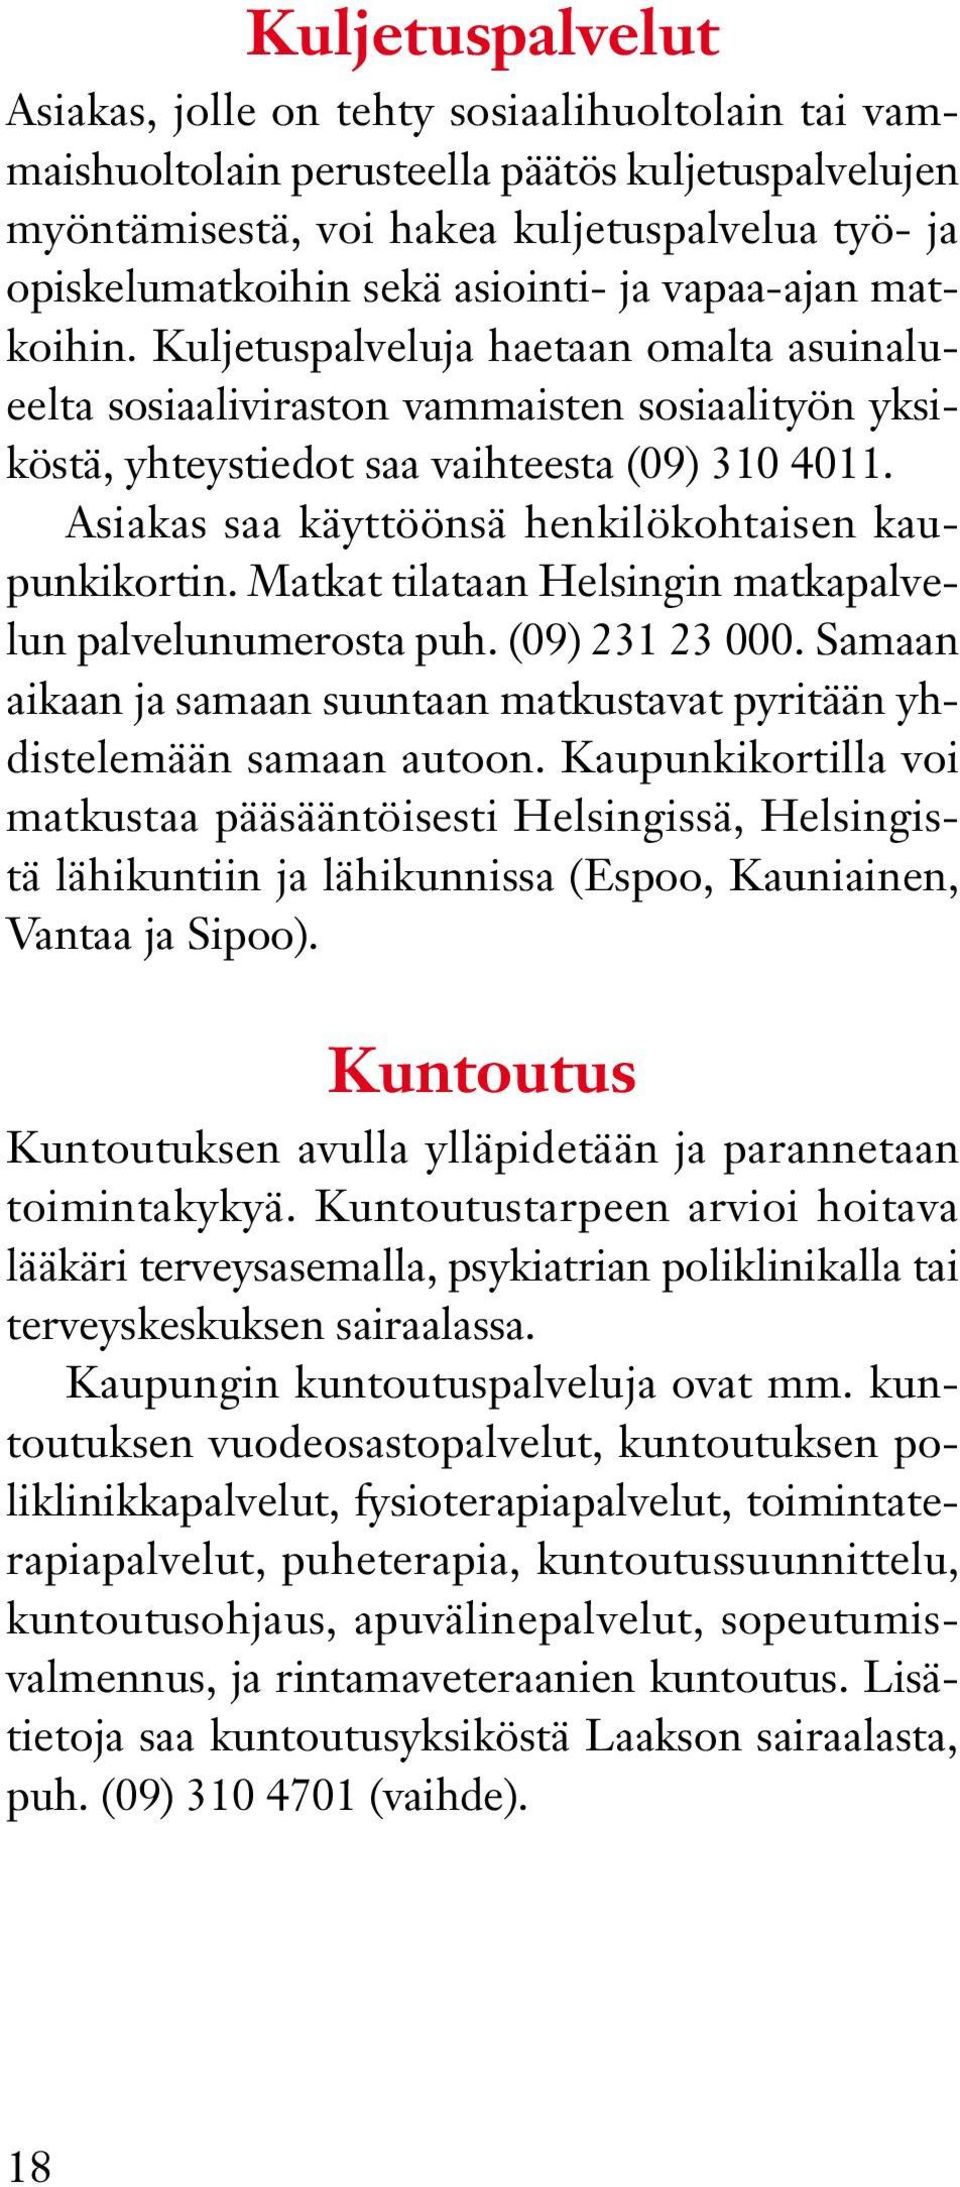 Asiakas saa käyttöönsä henkilökohtaisen kaupunkikortin. Matkat tilataan Helsingin matkapalvelun palvelunumerosta puh. (09) 231 23 000.